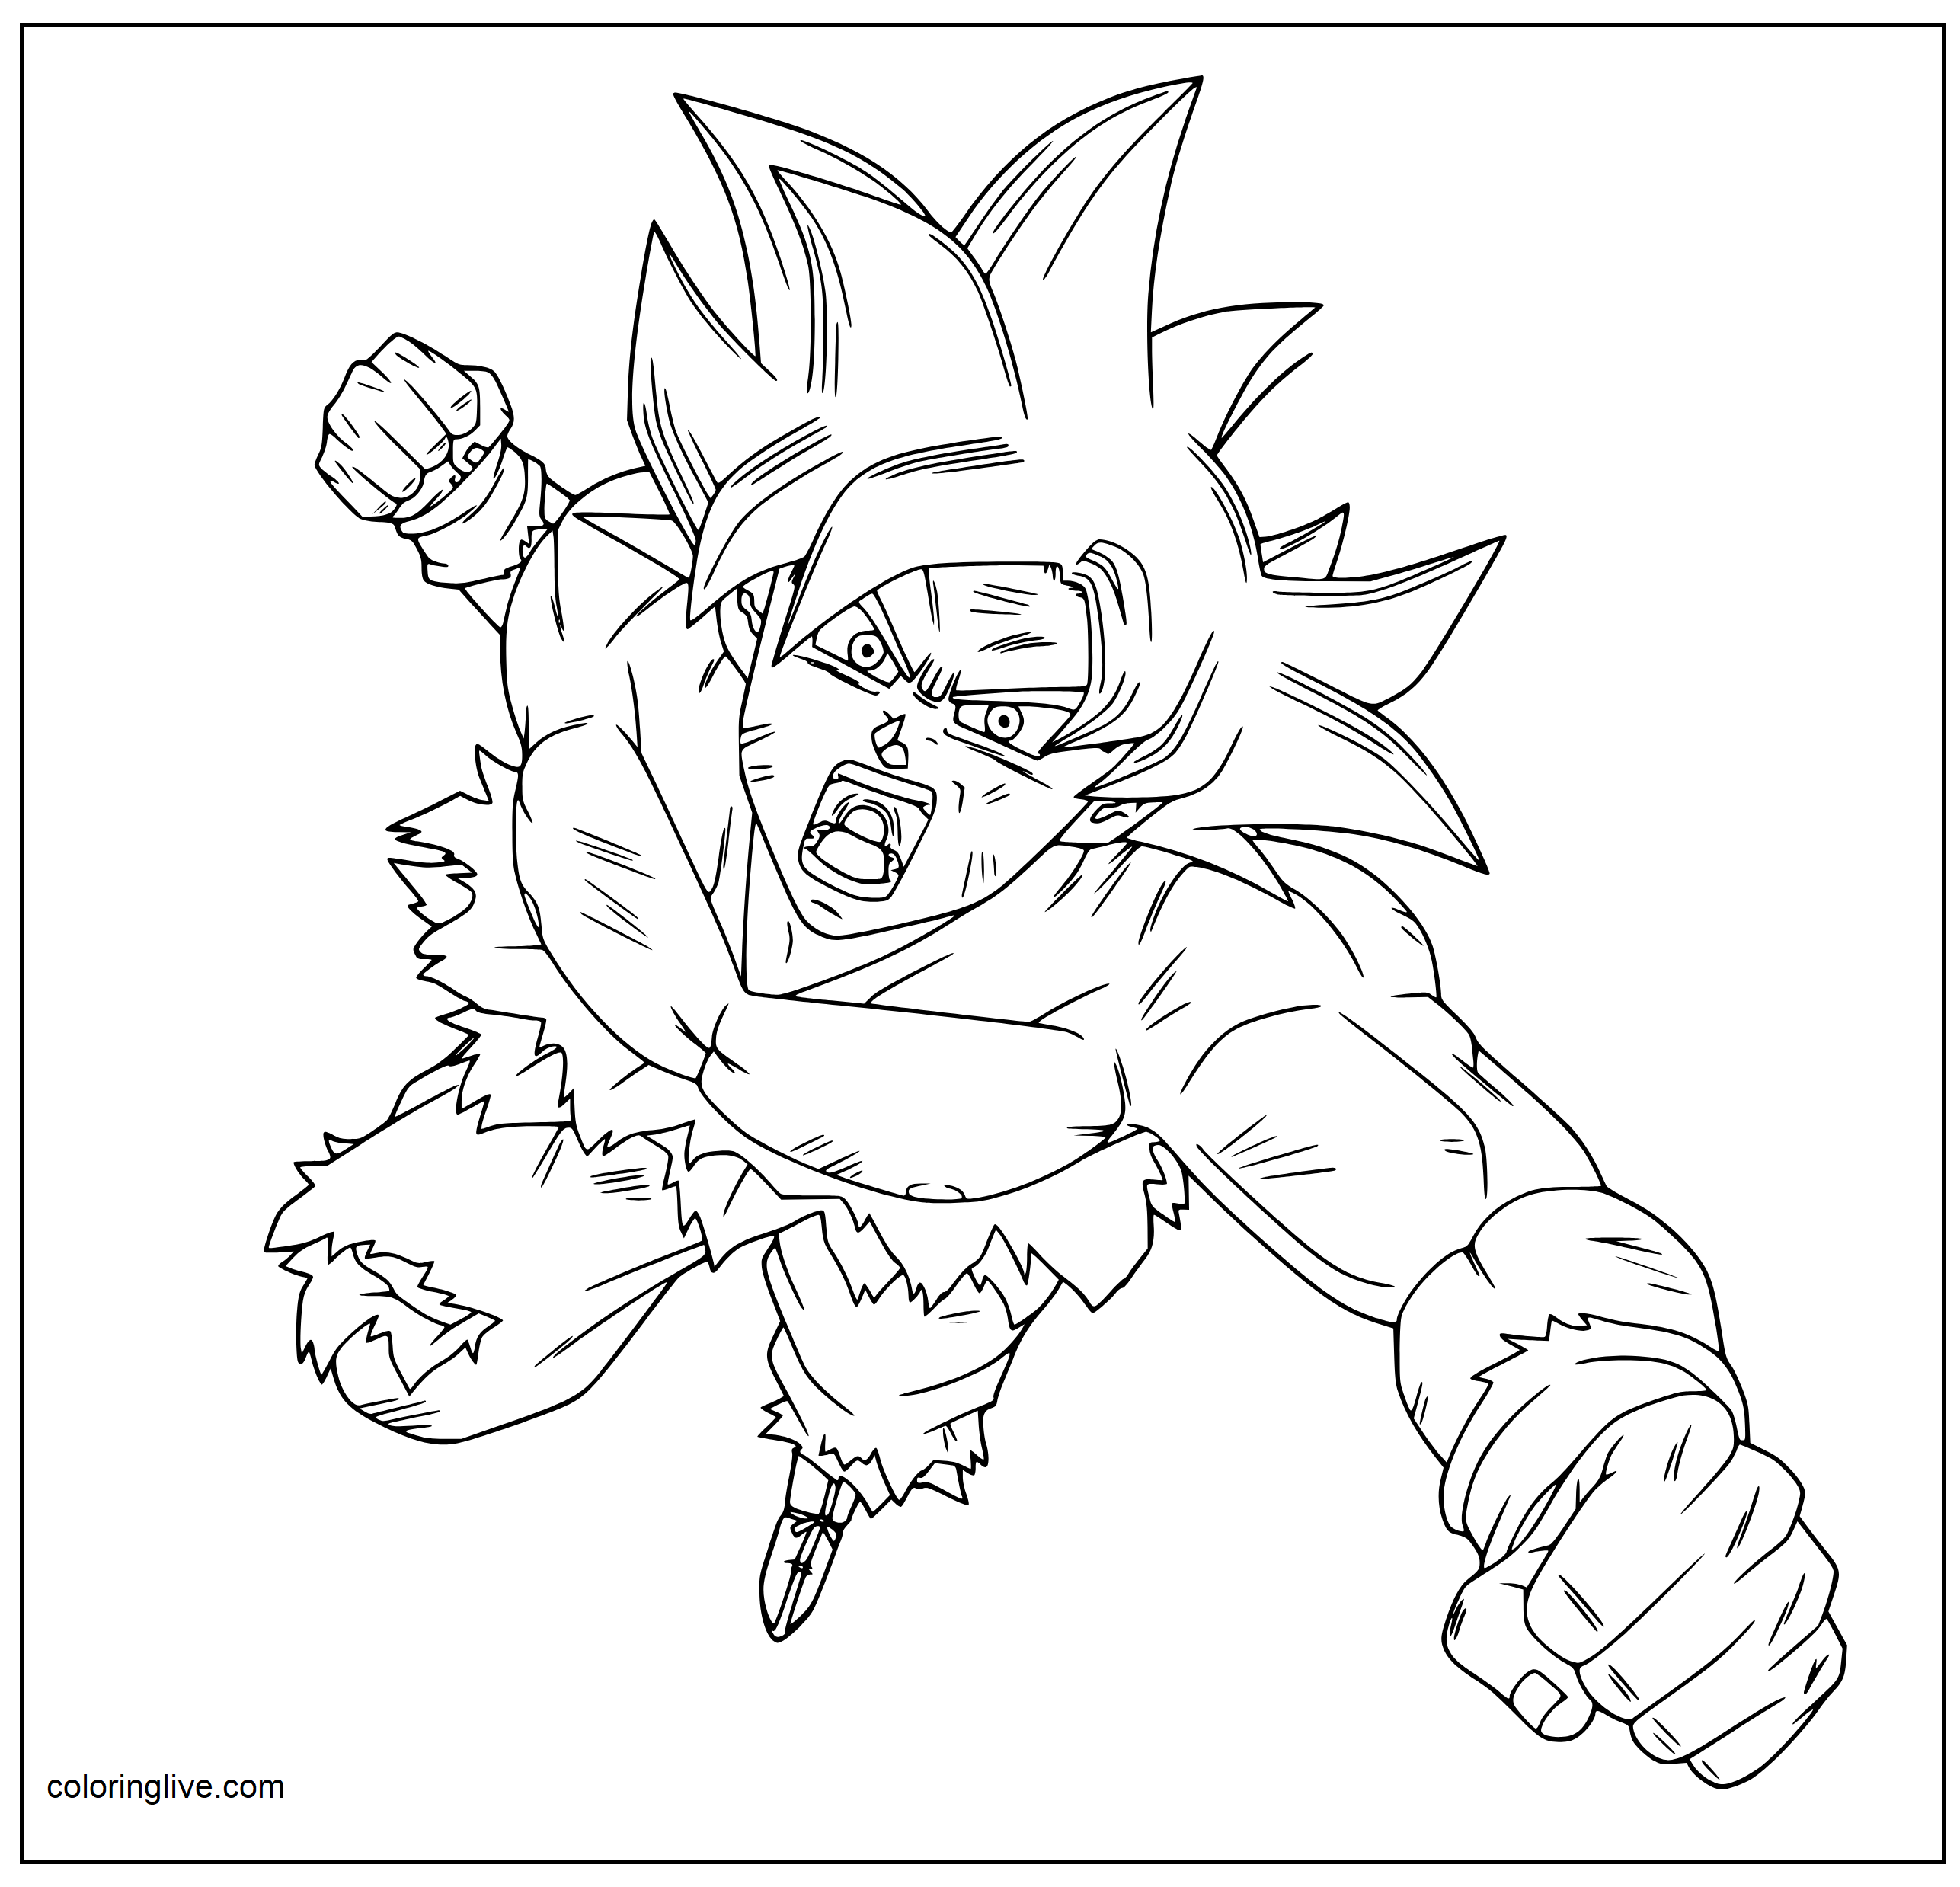 Printable Goku is angry Coloring Page for kids.